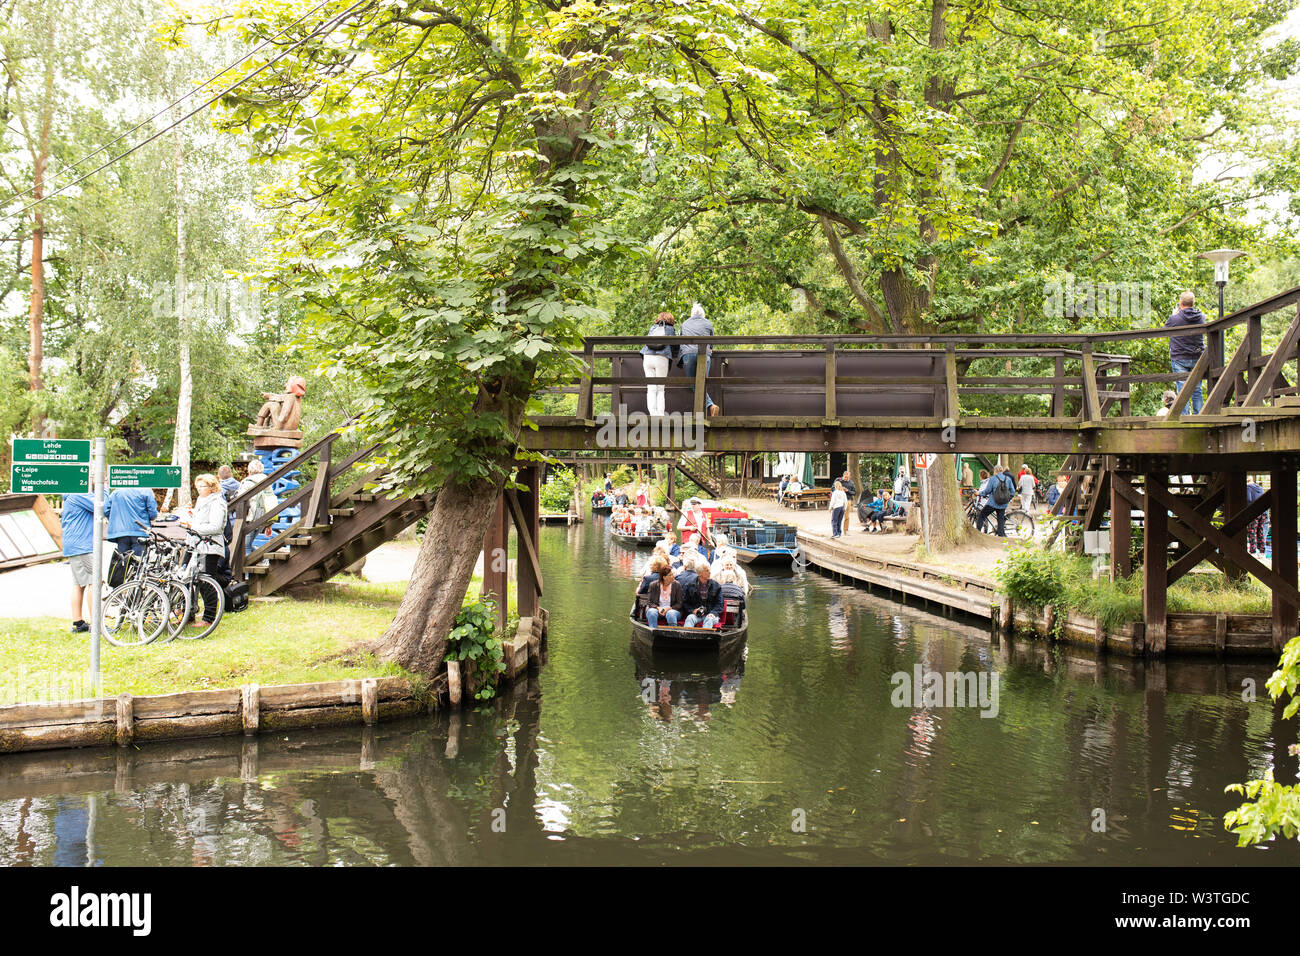 Un tour in barca passa sotto un ponte pedonale a Lehde, un villaggio nello Spreewald a Lübbenau, in Germania. Foto Stock